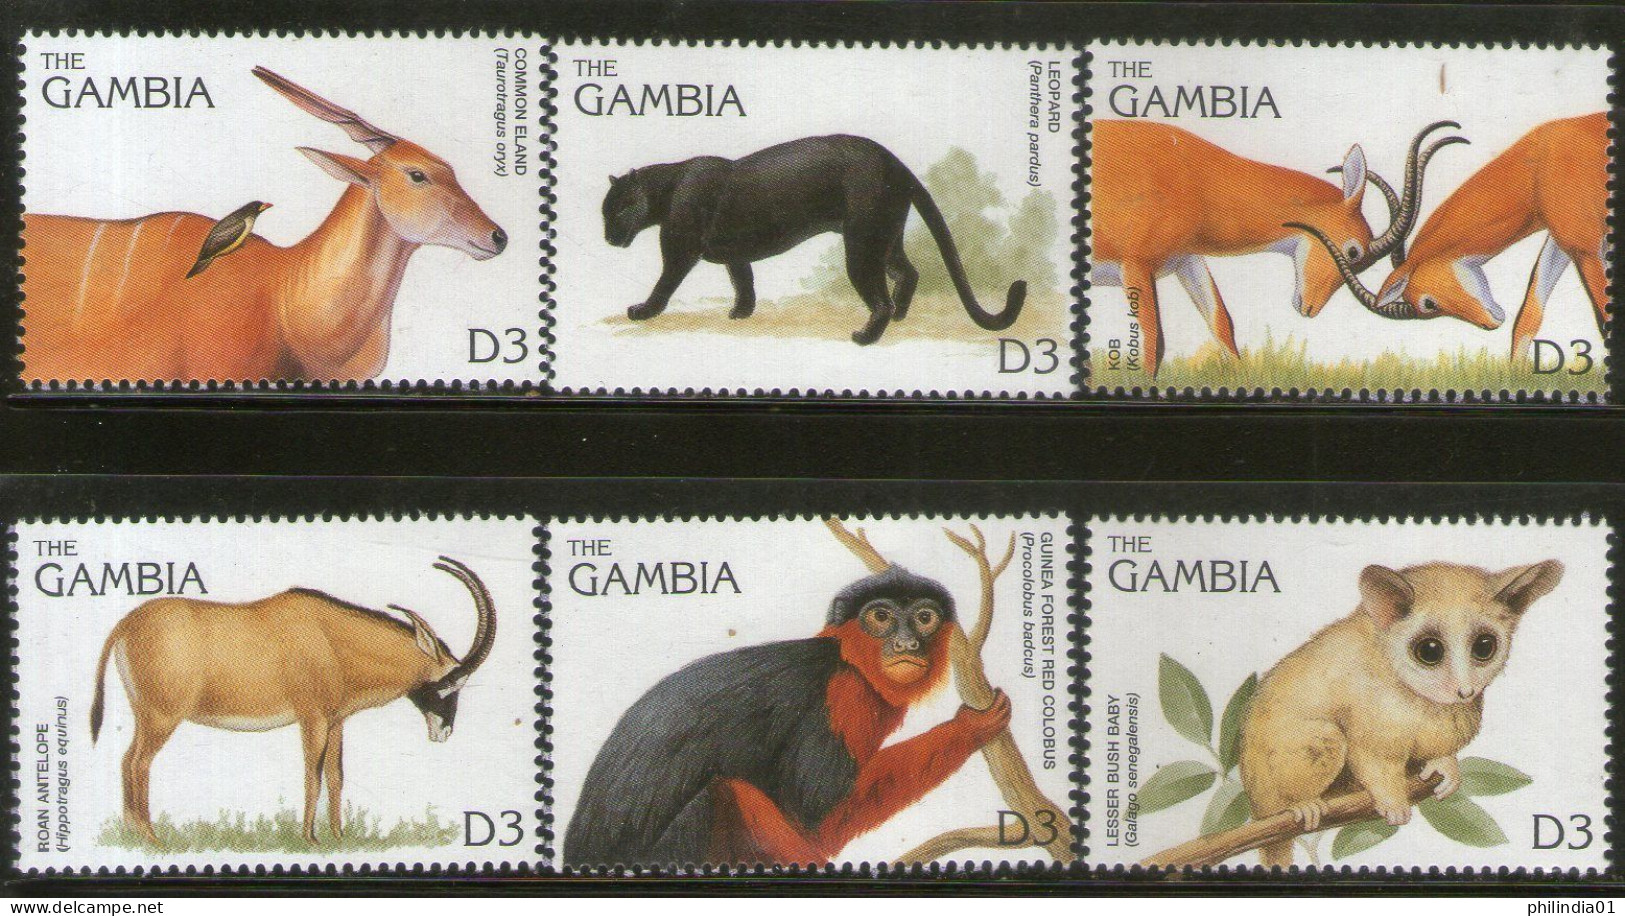 Gambia 1996 Monkey Mammals Wildlife Animals Sc 1740 6v MNH # 807 - Singes